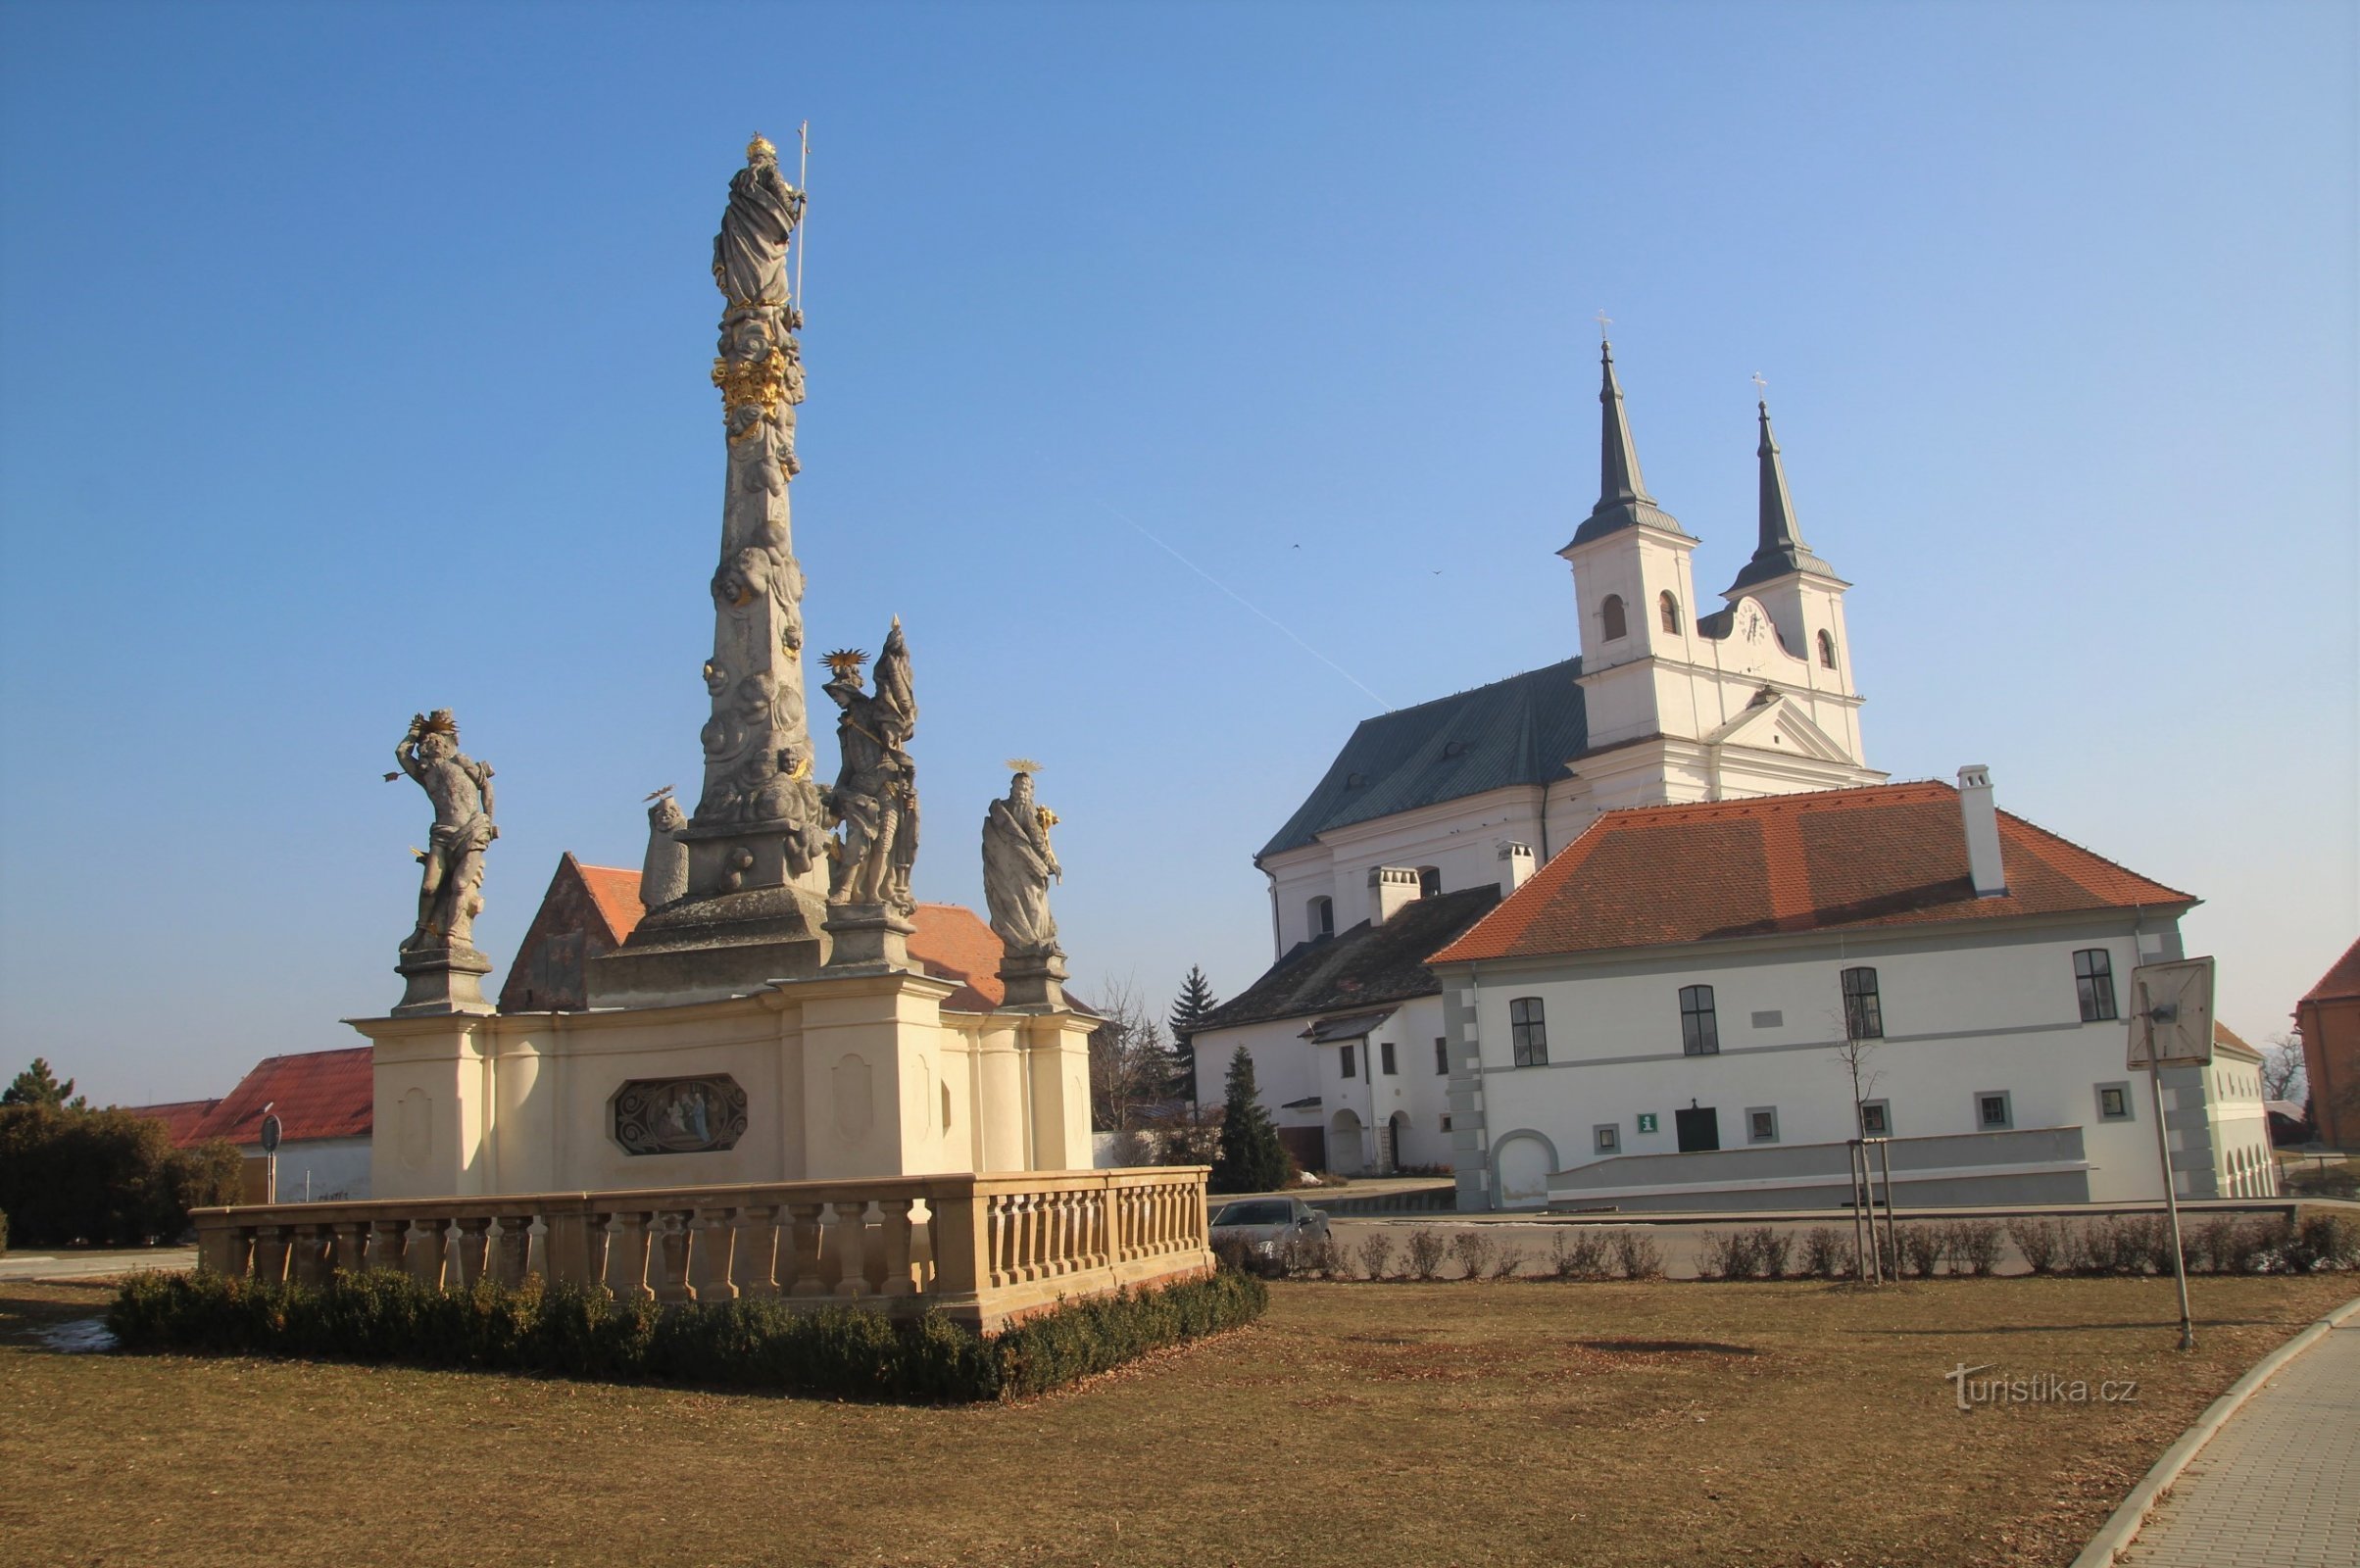 Drnholecké náměstí con la columna mariana, el antiguo ayuntamiento y la Iglesia de la Santísima Trinidad